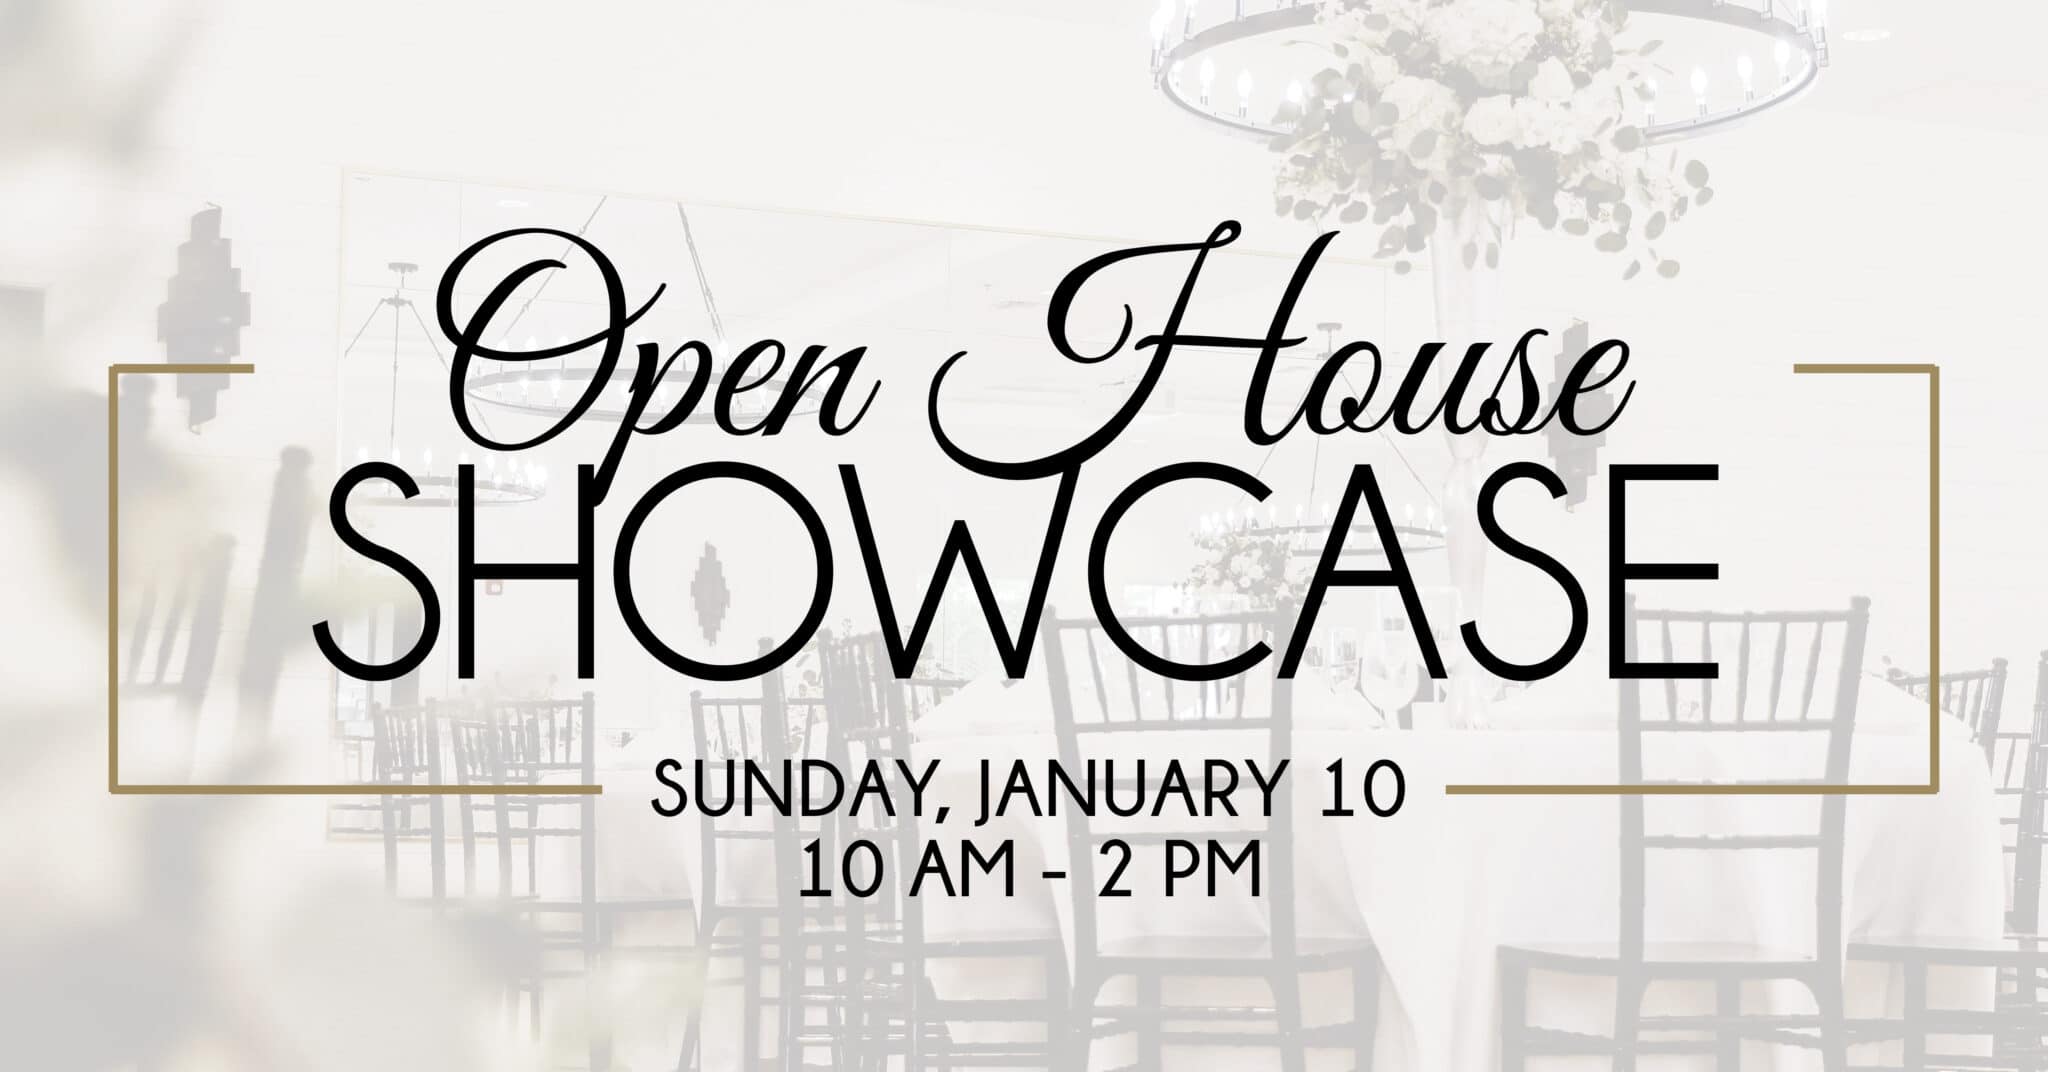 Open House Showcase Sunday January 10th